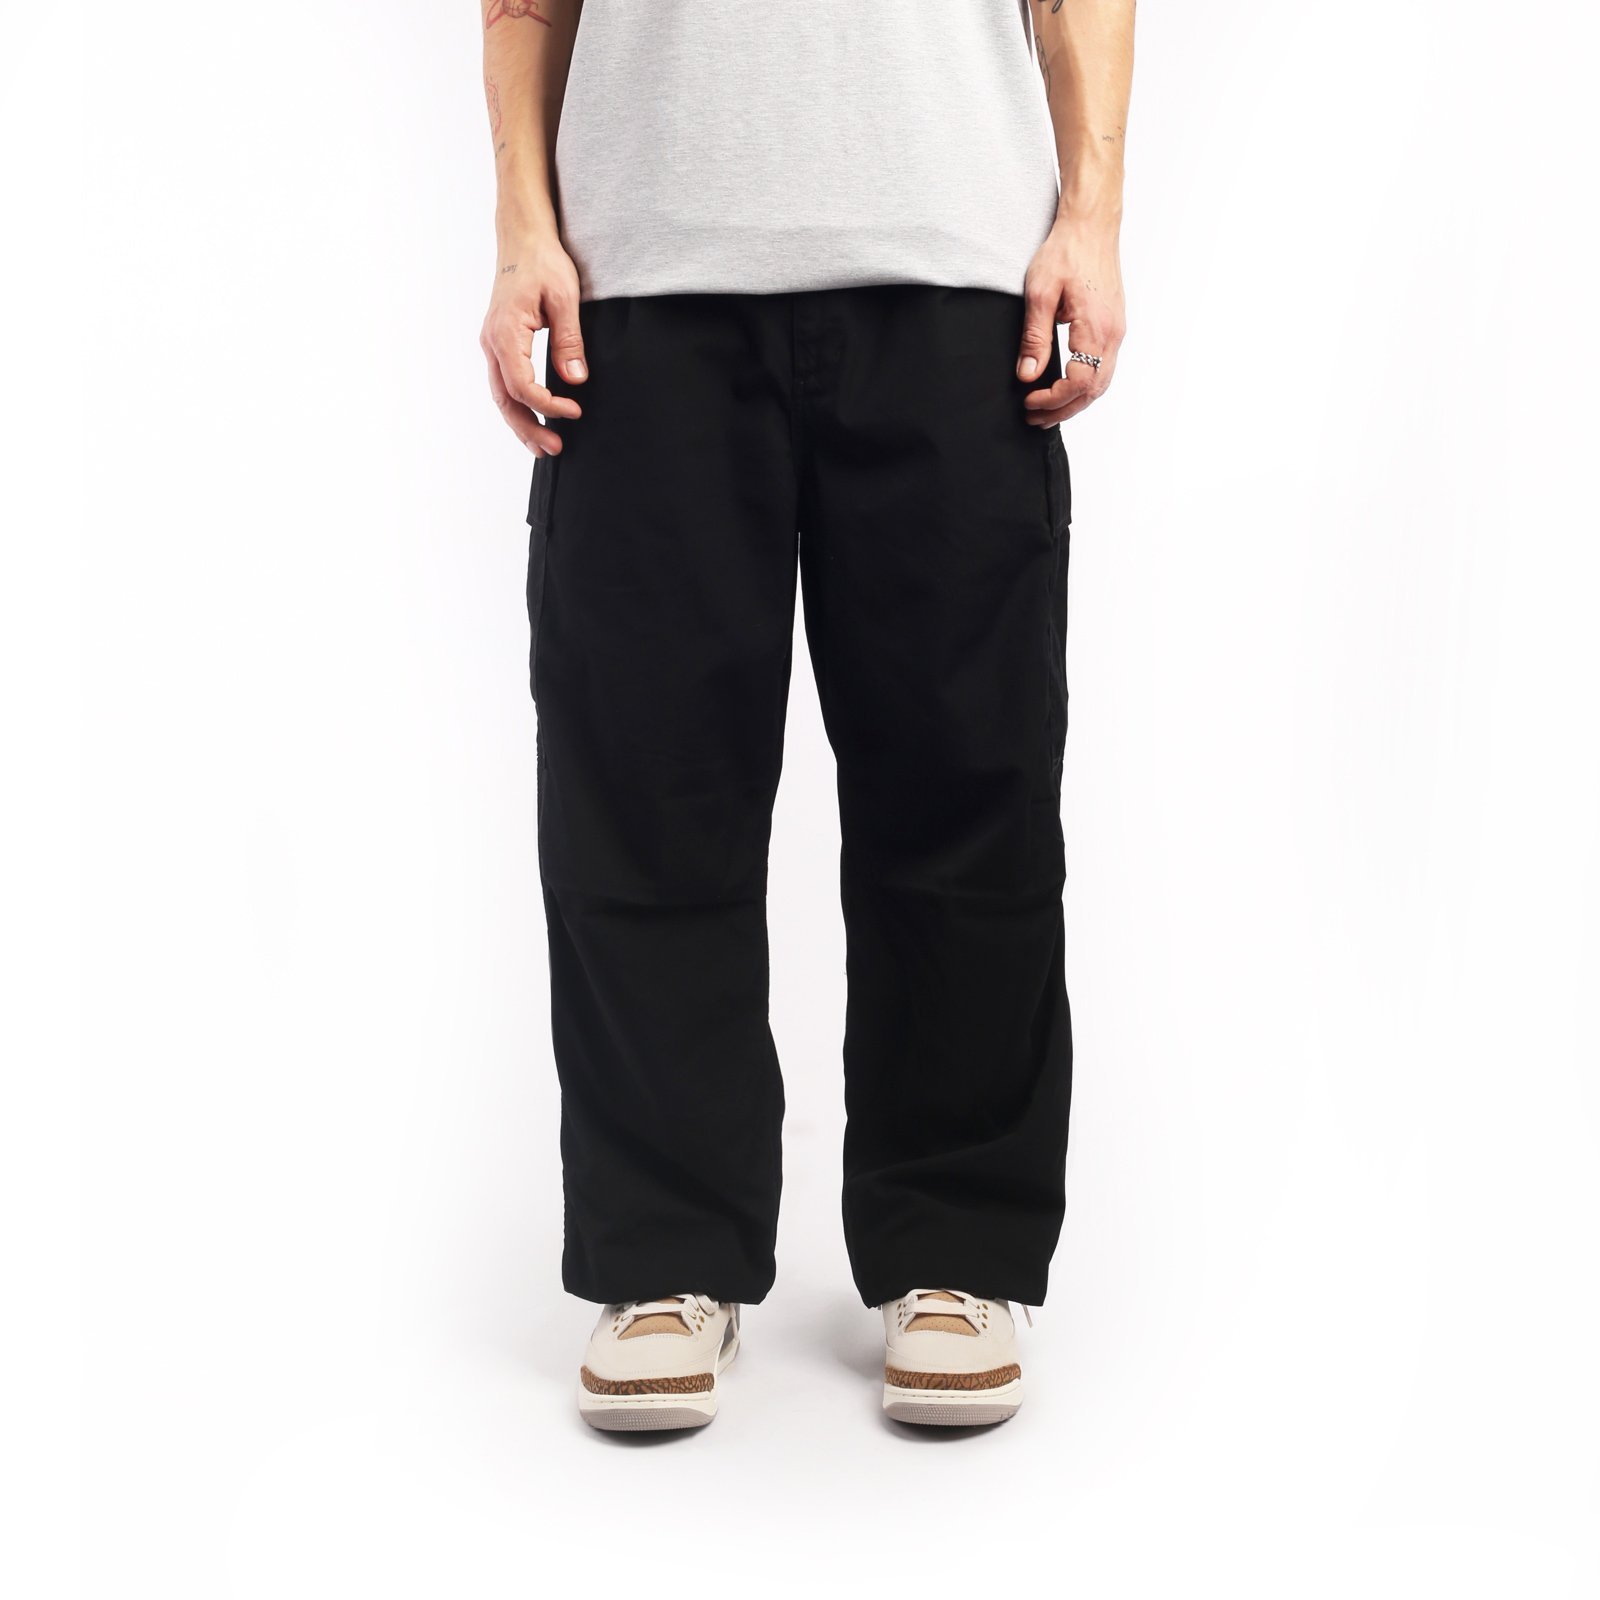 мужские брюки Carhartt WIP Cole Cargo Pant  (I030477-black)  - цена, описание, фото 1